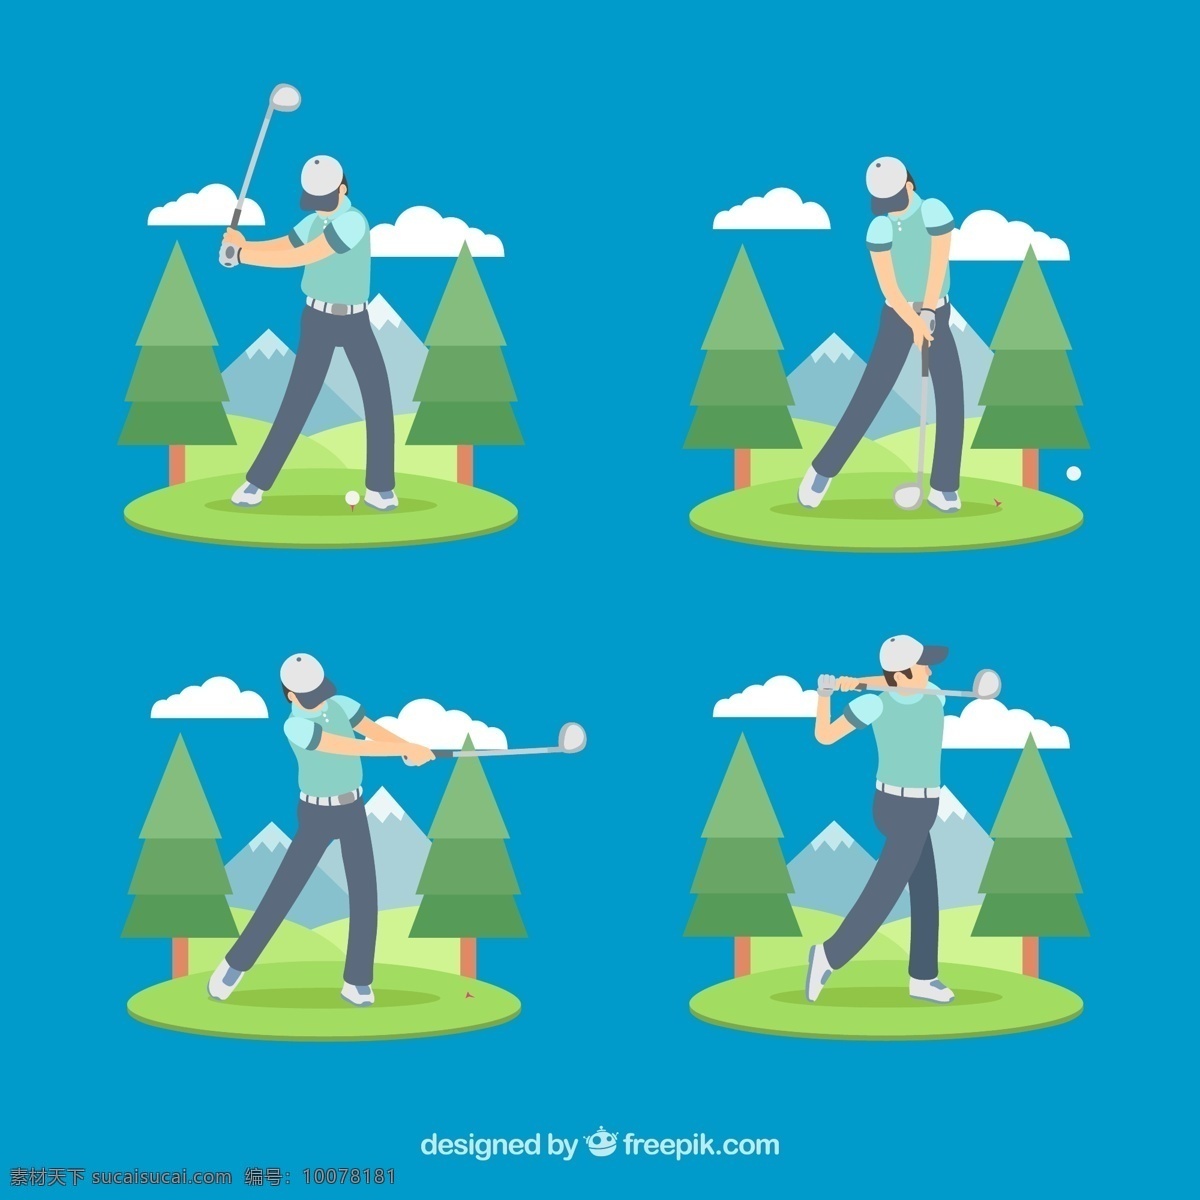 款 创意 高尔夫 男子 动作 矢量图 雪山 云朵 树木 运动 草地 动漫动画 动漫人物